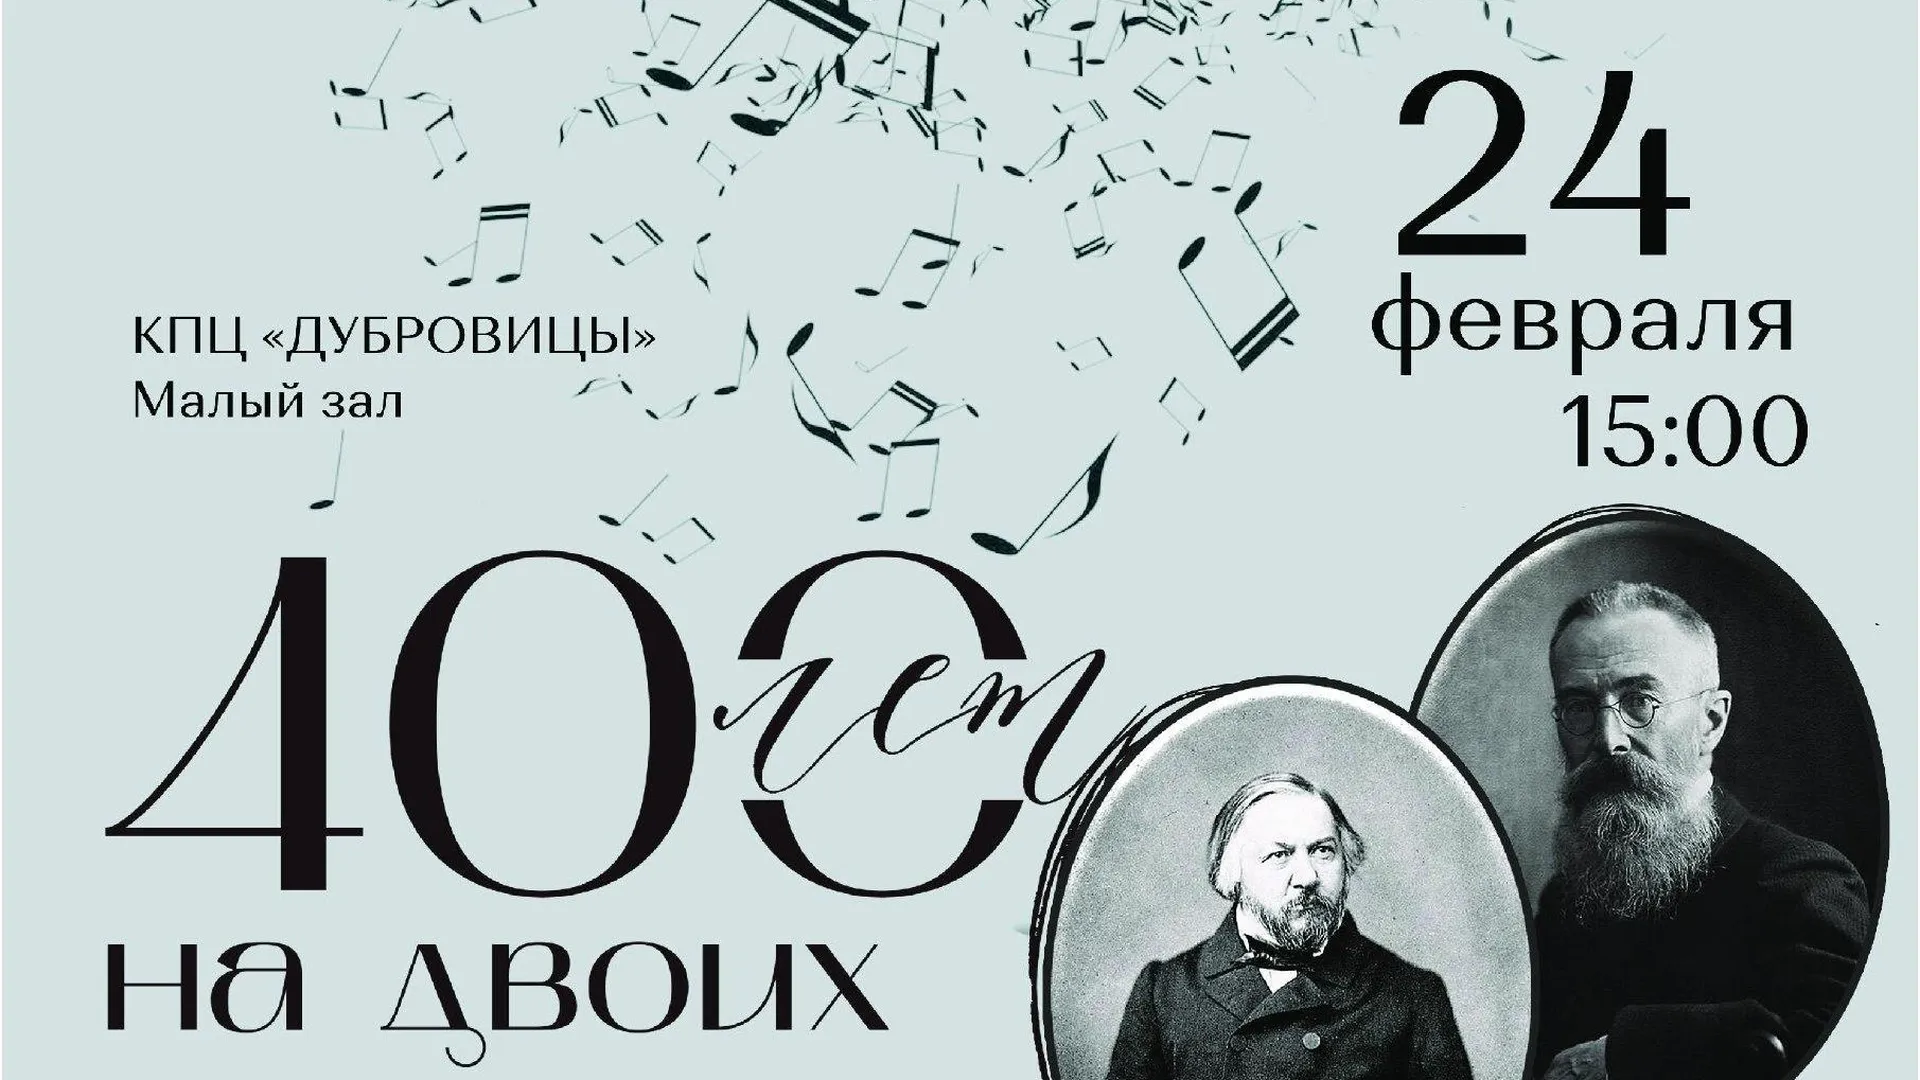 Концерт в честь юбилеев композиторов Глинки и Римского‑Корсакова пройдет в Подольске